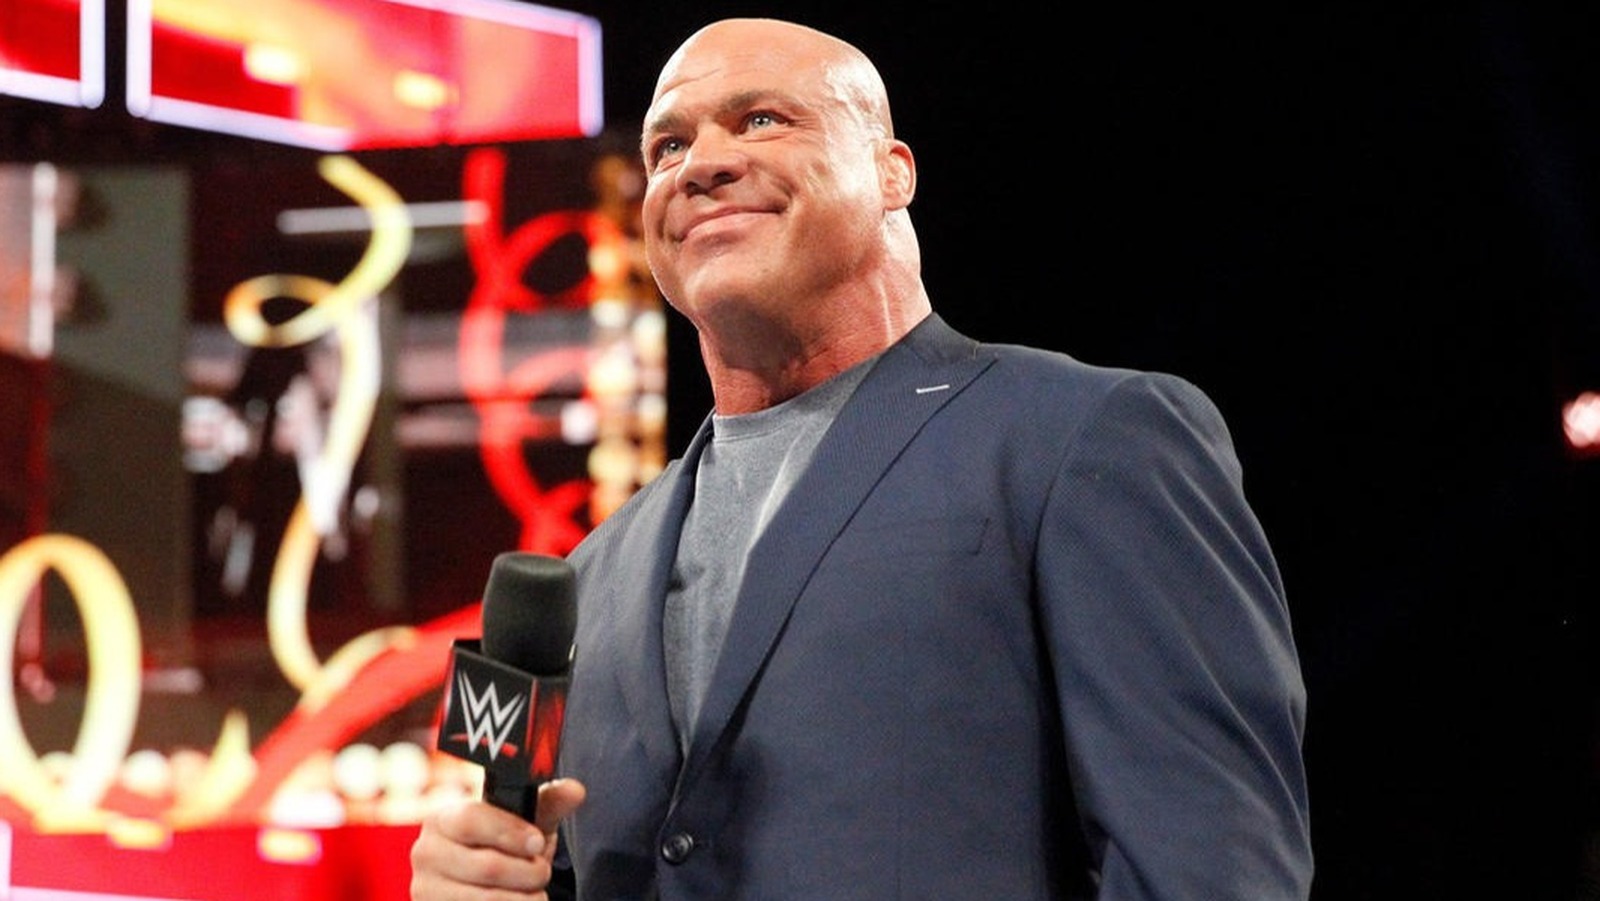 El miembro del Salón de la Fama de la WWE, Kurt Angle, critica ciertos aspectos de la era de la actitud